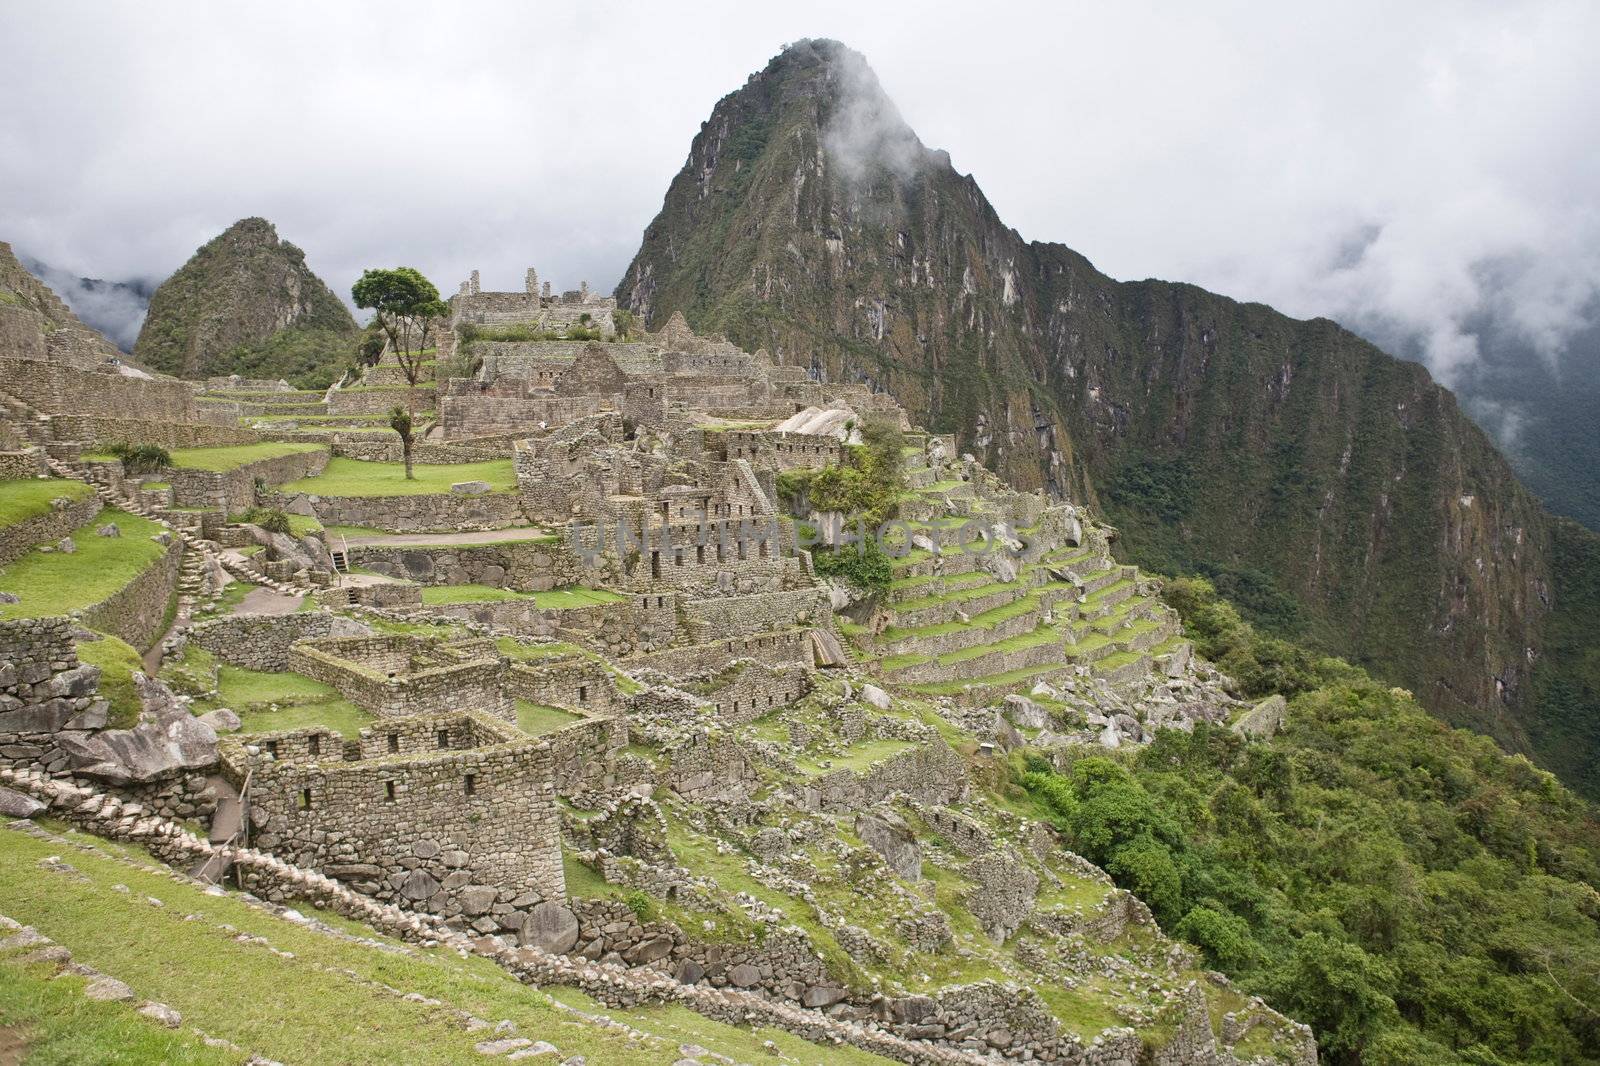 Machu Picchu is a pre-Columbian Inca site located in Peru.